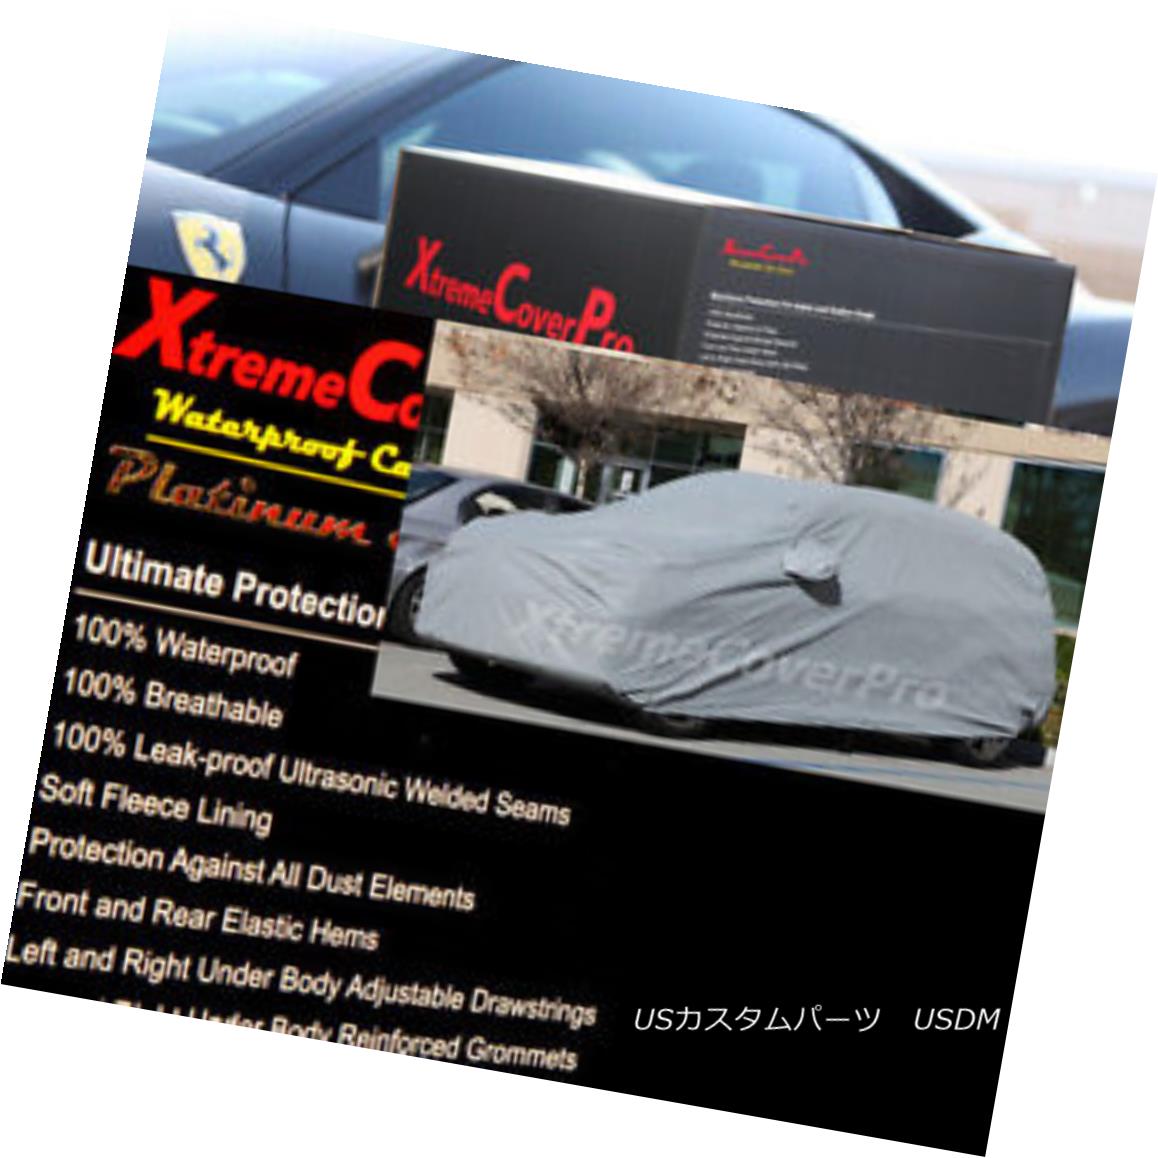 2007 2008 2009 Chevy Suburban Waterproof Car Cover w/MirrorPocketカテゴリカーカバー状態新品メーカー車種発送詳細送料一律 1000円（※北海道、沖縄、離島は省く）商品詳細輸入商品の為、英語表記となります。 Condition: New Warranty: Limited Lifetime through Manufacturer Breathable: Yes Brand: XTREMECOVERPRO Inside Layer: Cotton Manufacturer Part Number: Does Not Apply Fit: Universal Fit Surface Finish: Anti UV Non-Woven Fabric FITMENT: PLEASE REFER TO AUCTION TITLE MATCHES YOUR VEHICLE Color: Gray Type: Full Coverage Cover※以下の注意事項をご理解頂いた上で、ご入札下さい※■海外輸入品の為、NC,NRでお願い致します。■フィッテングや車検対応の有無については、画像と説明文よりお客様の方にてご判断をお願いしております。■USのカスタムパーツは国内の純正パーツを取り外した後、接続コネクタが必ずしも一致するとは限らず、加工が必要な場合がございます。■商品説明文中に英語にて”保障”に関する記載があっても適応はされませんので、ご理解ください。■初期不良（到着より7日以内）のみ保証対象とします。ただし、取り付け後は、保証対象外とします。■海外倉庫から到着した製品を、再度国内で検品を行い、日本郵便または佐川急便にて発送となります。■お届けまでには、2〜3週間程頂いております。ただし、天候次第で多少遅れが発生する場合もあります。■商品落札後のお客様のご都合によるキャンセルはお断りしておりますが、商品落札金額の30％の手数料をいただいた場合のみお受けいたします。■他にもUSパーツを多数出品させて頂いておりますので、ご覧頂けたらと思います。■USパーツの輸入代行も行っておりますので、ショップに掲載されていない商品でもお探しする事が可能です!!お気軽にお問い合わせ下さい。&nbsp;